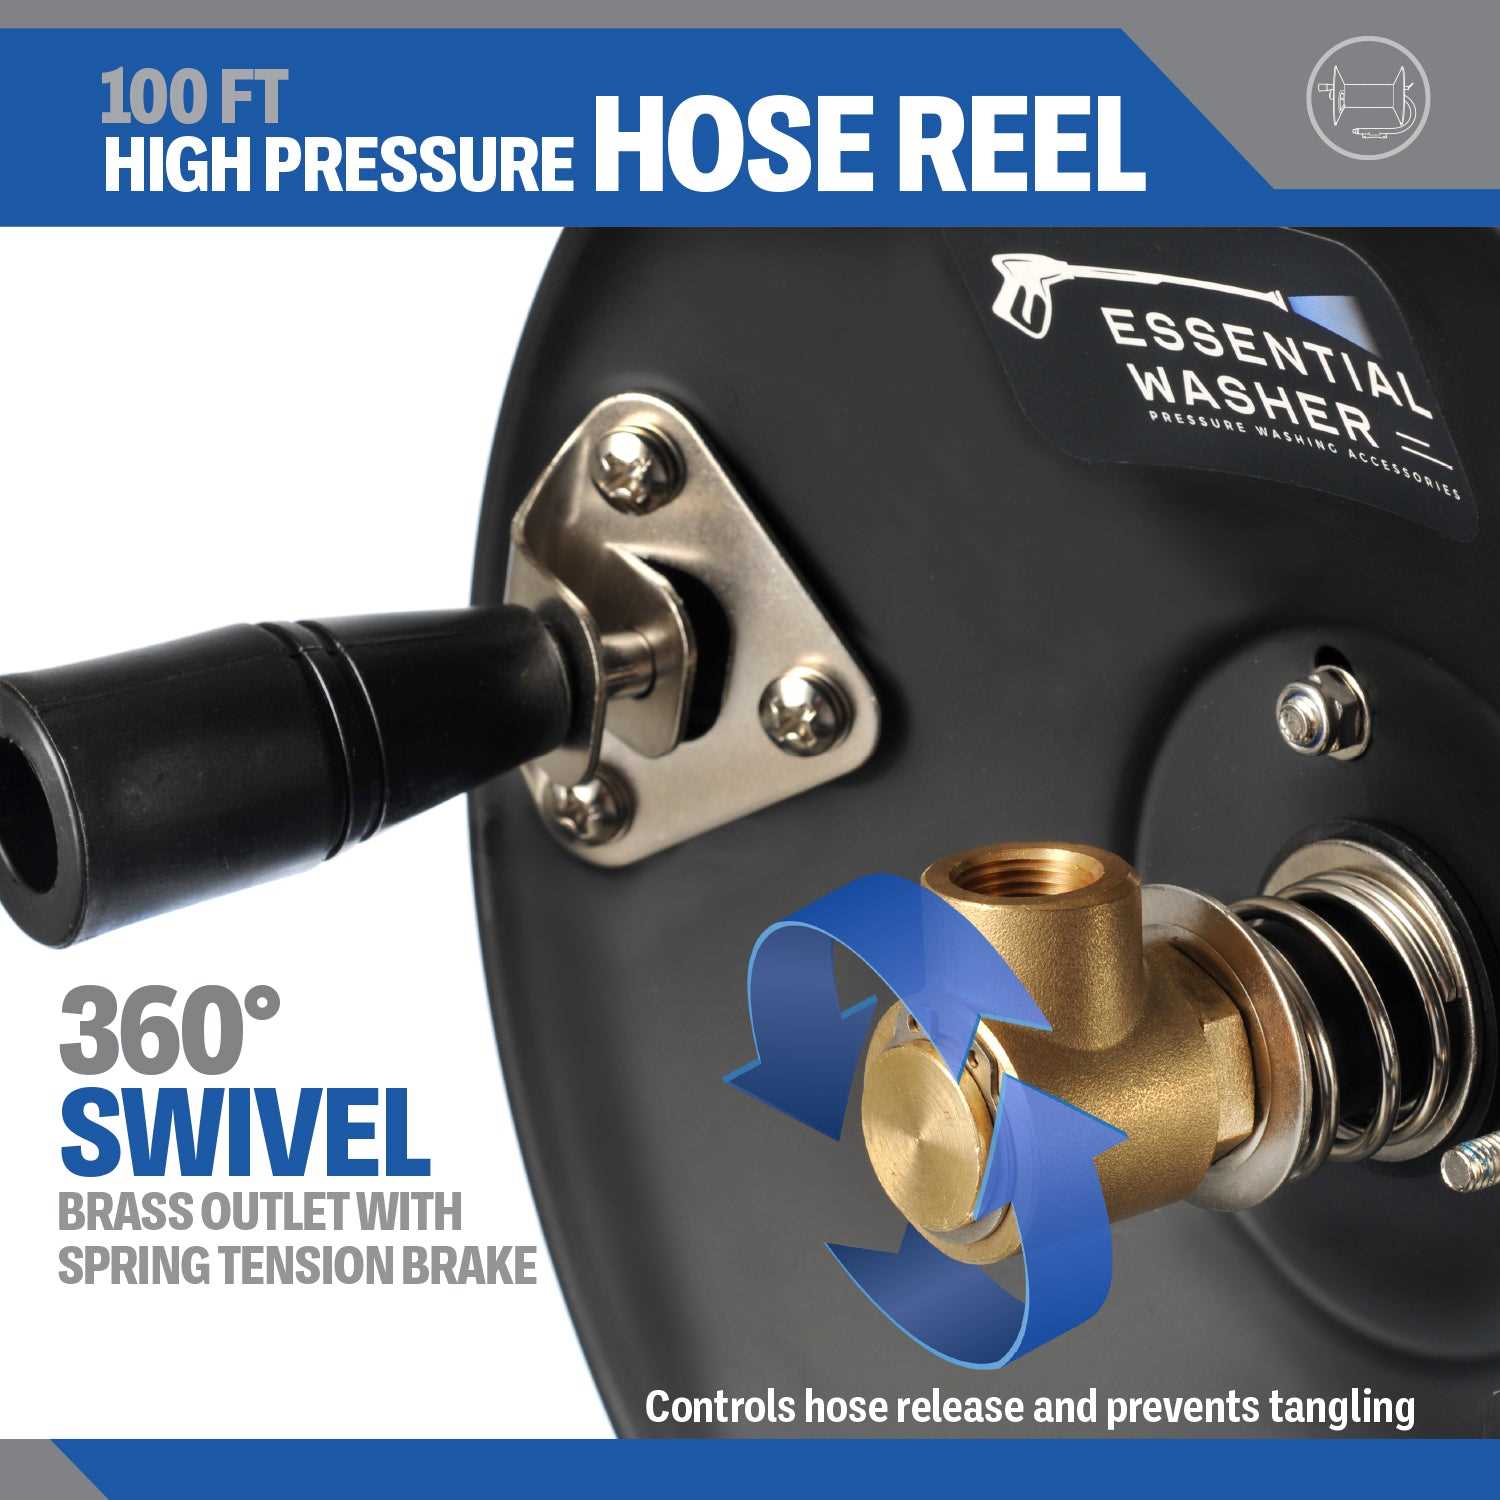 Pressure Washer 100FT Hose Reel | High Pressure Commercial Grade